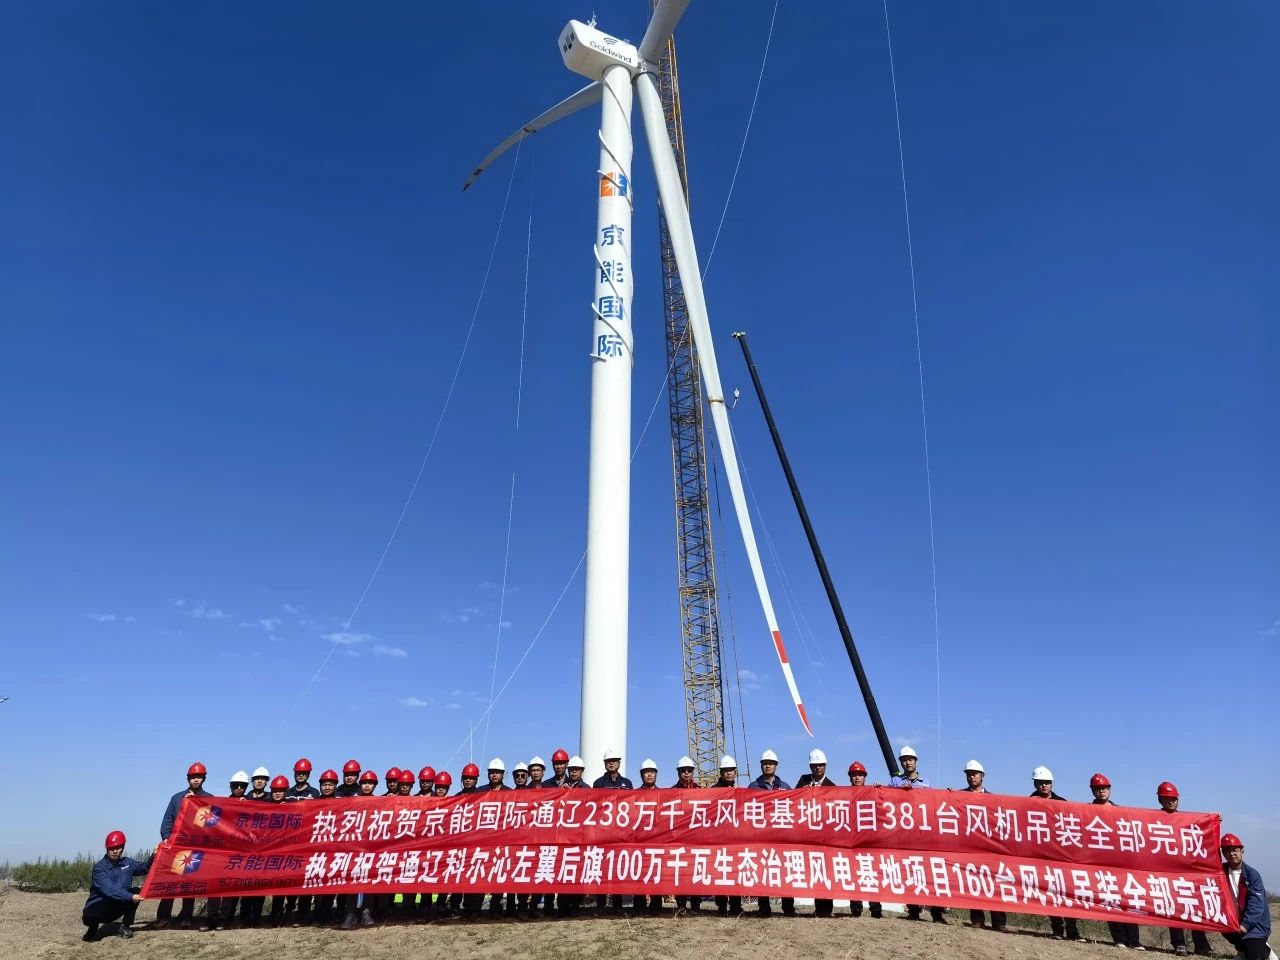 京能国际内蒙古通辽2.38GW风电基地项目381台风力发电机组吊装全部完成